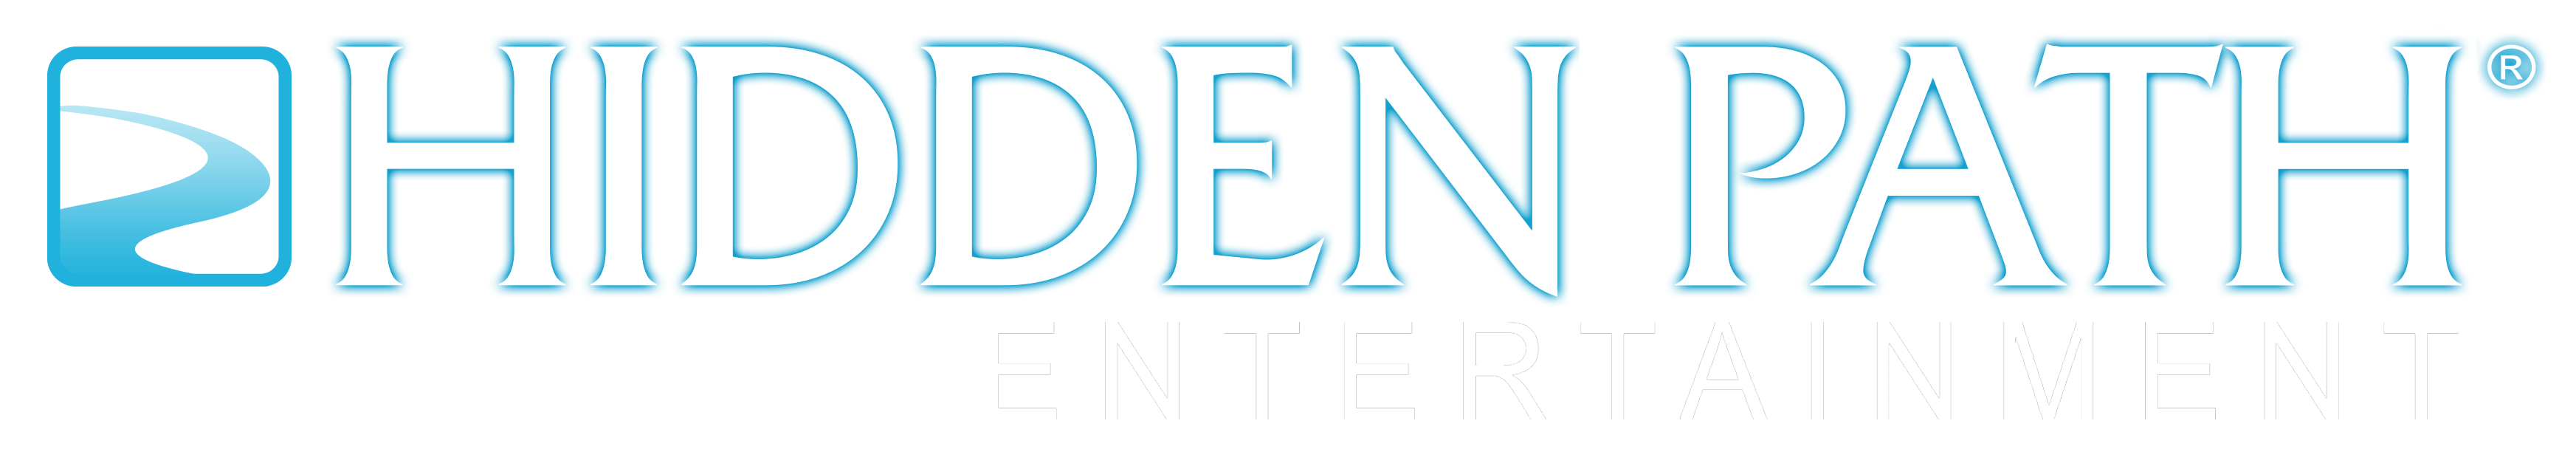 Hidden Path Entertainment Logo